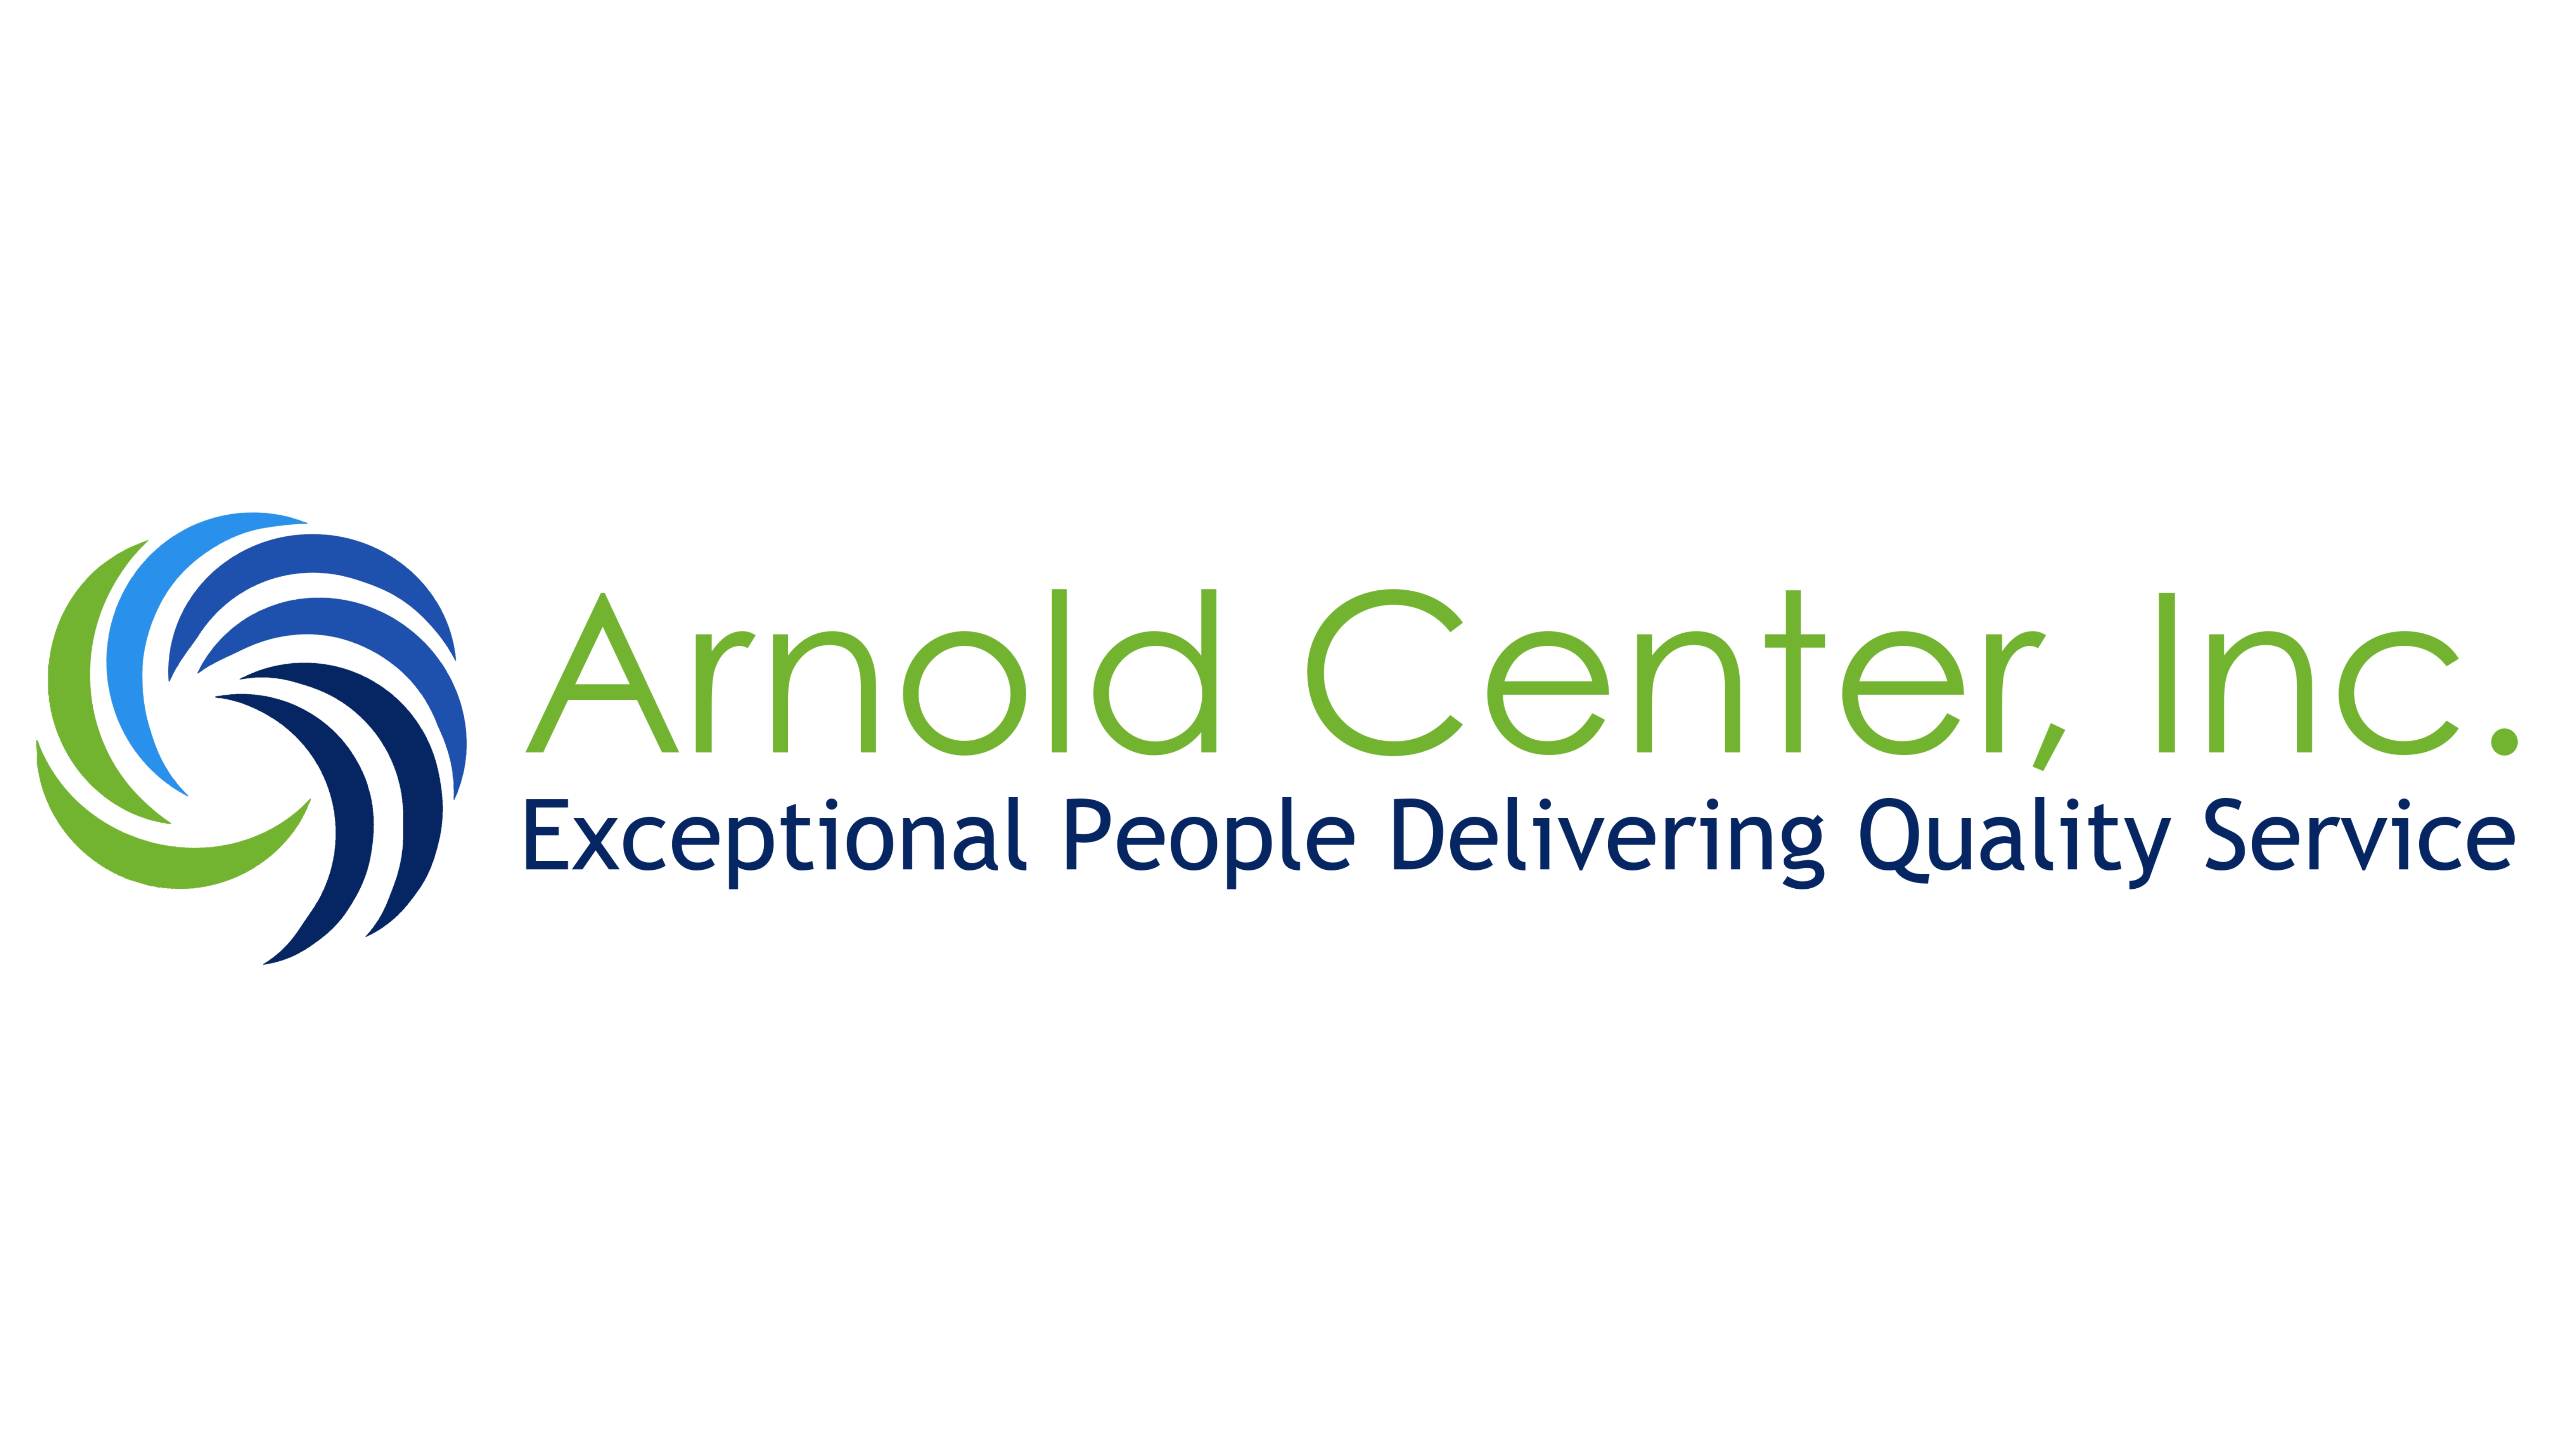 Arnold Center